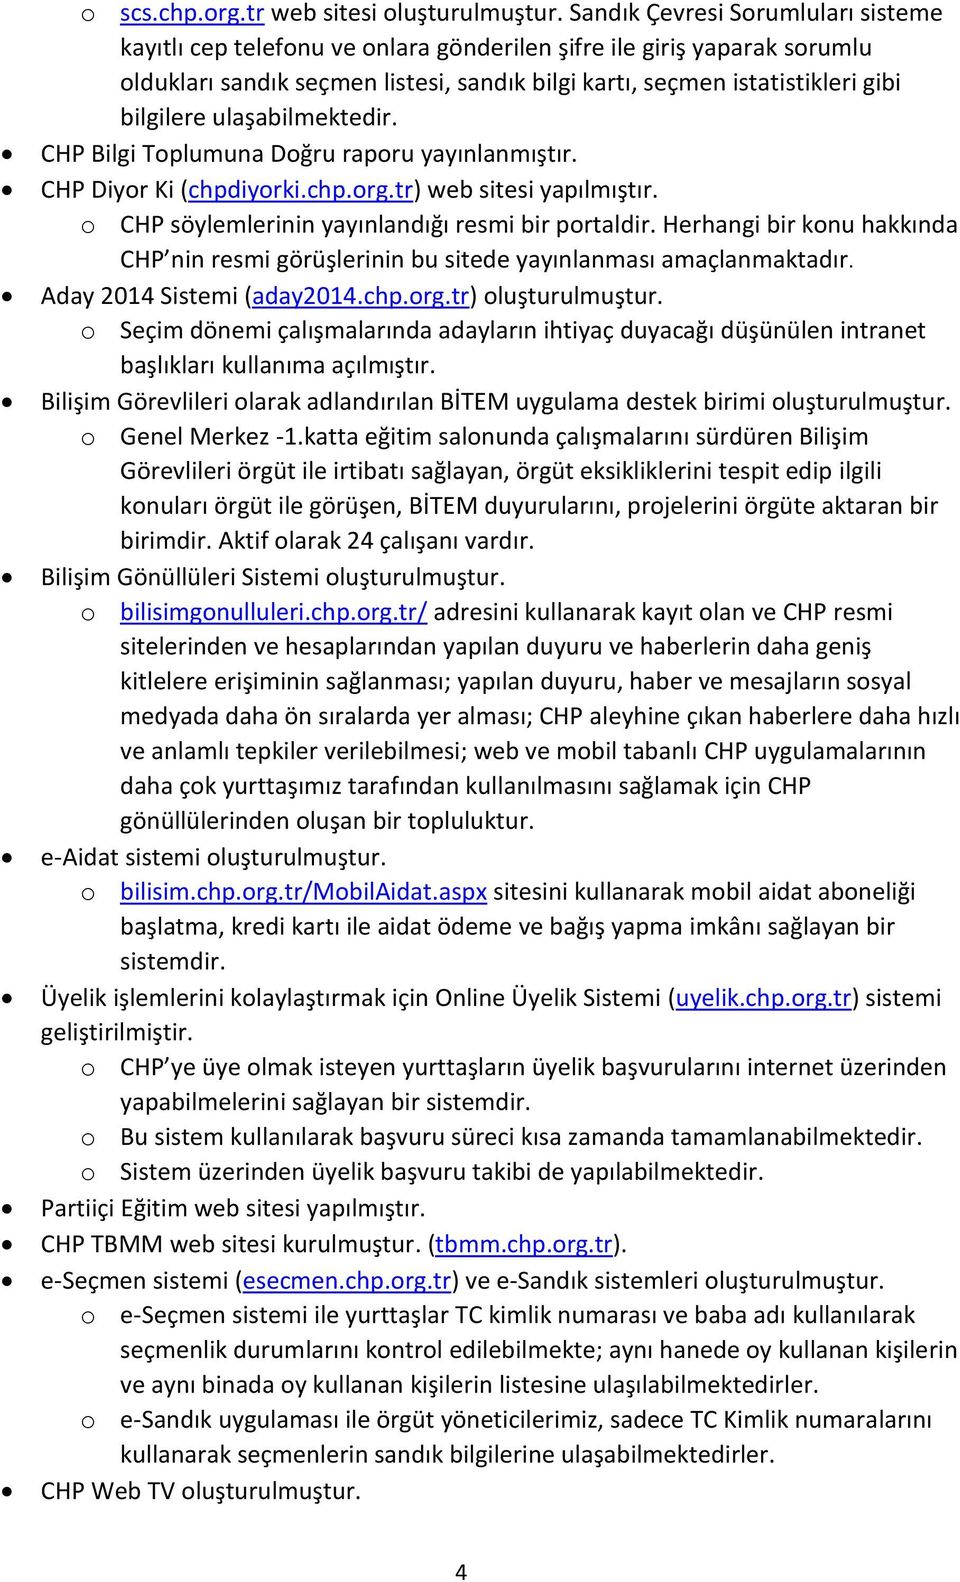 ulaşabilmektedir. CHP Bilgi Toplumuna Doğru raporu yayınlanmıştır. CHP Diyor Ki (chpdiyorki.chp.org.tr) web sitesi yapılmıştır. o CHP söylemlerinin yayınlandığı resmi bir portaldir.